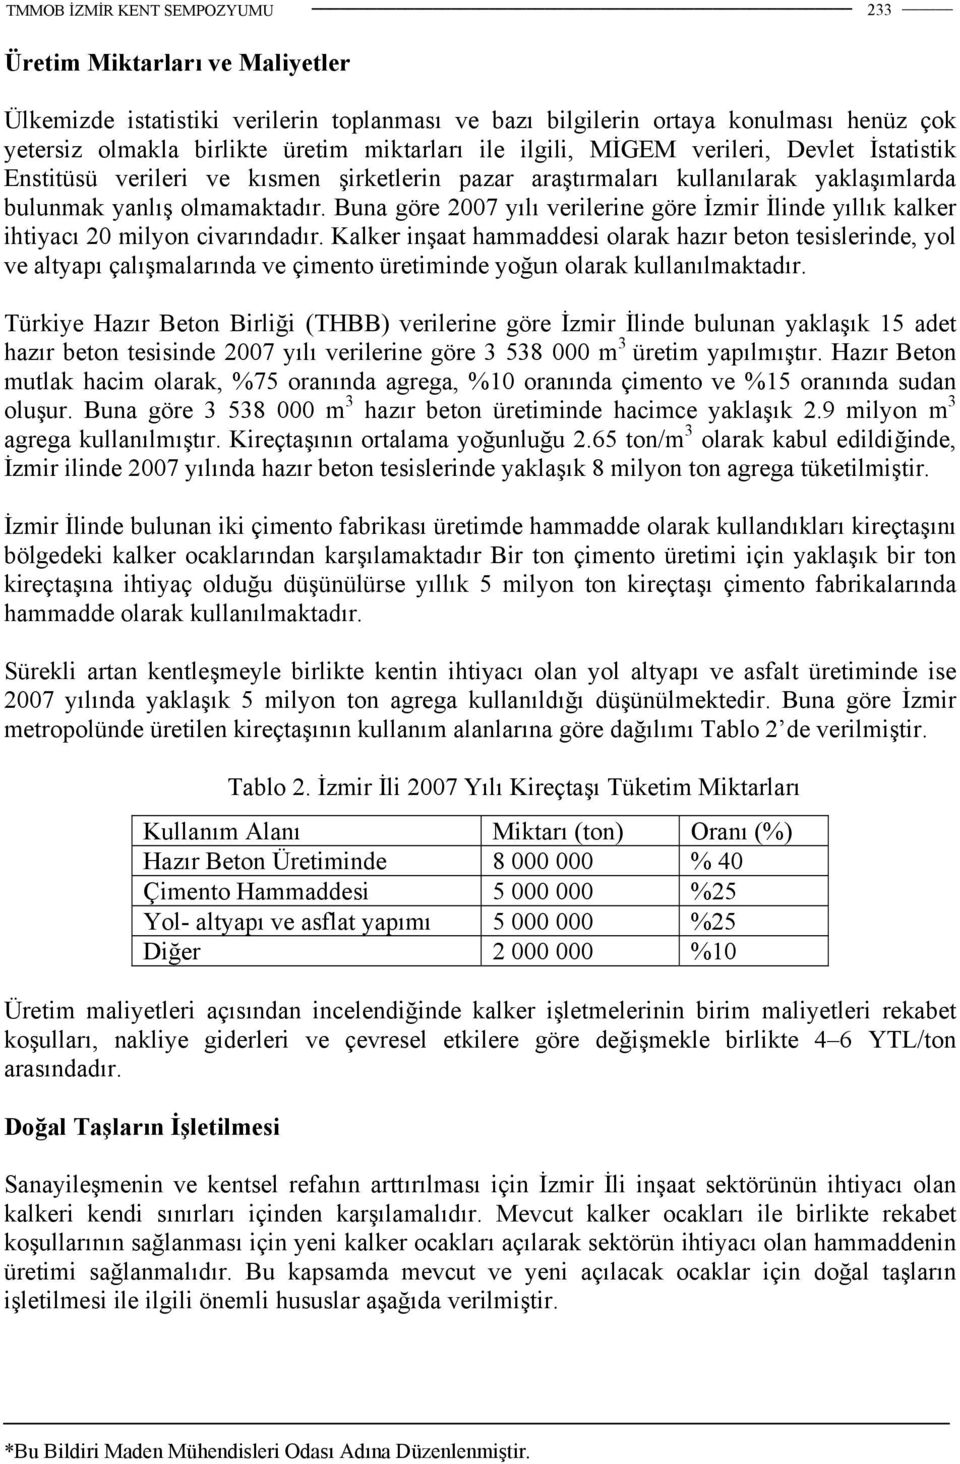 Buna göre 2007 yılı verilerine göre İzmir İlinde yıllık kalker ihtiyacı 20 milyon civarındadır.